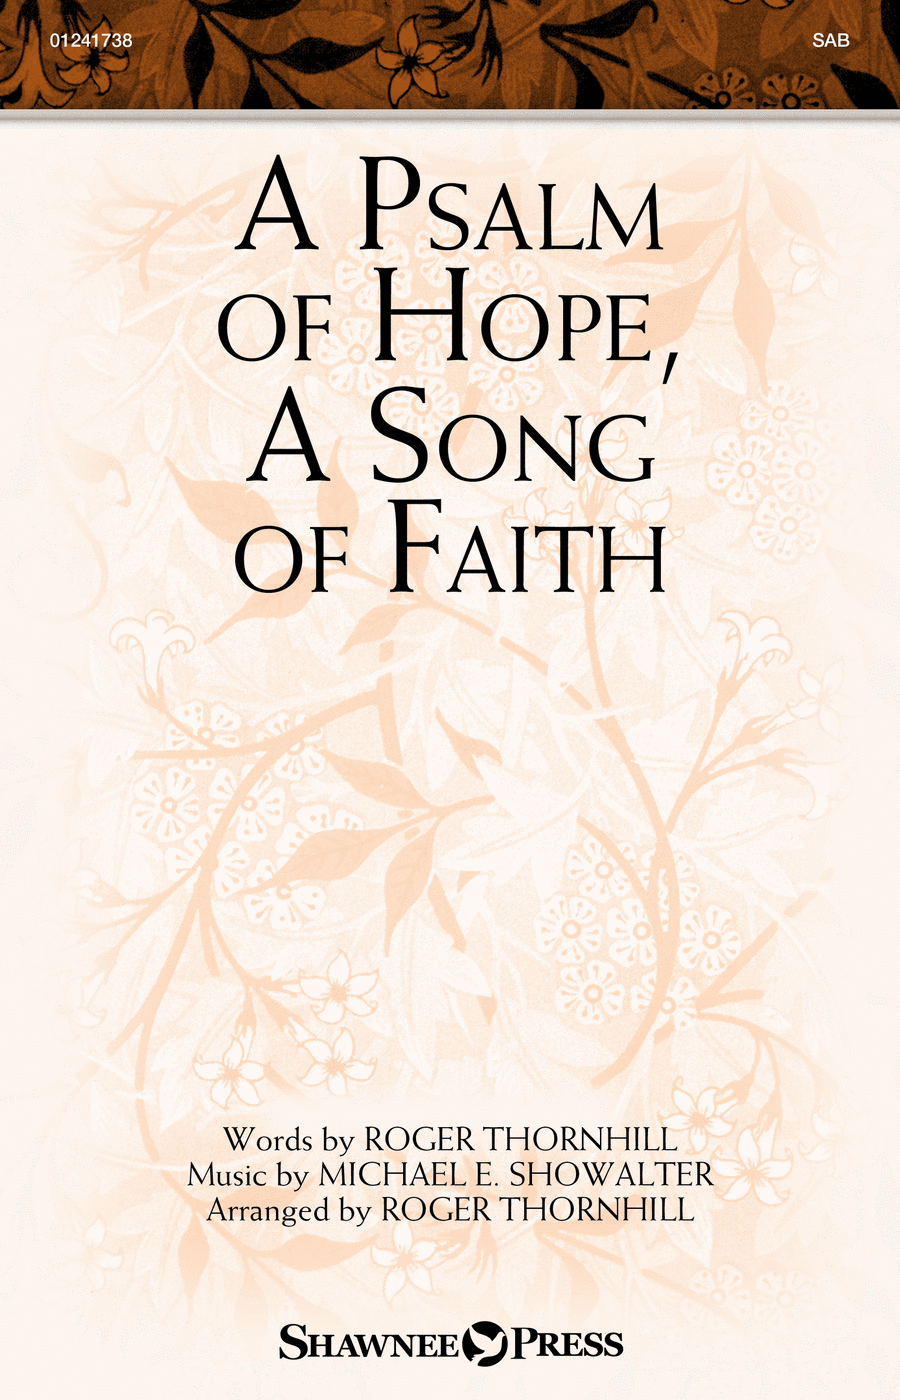 A Psalm of Hope, A Song of Faith